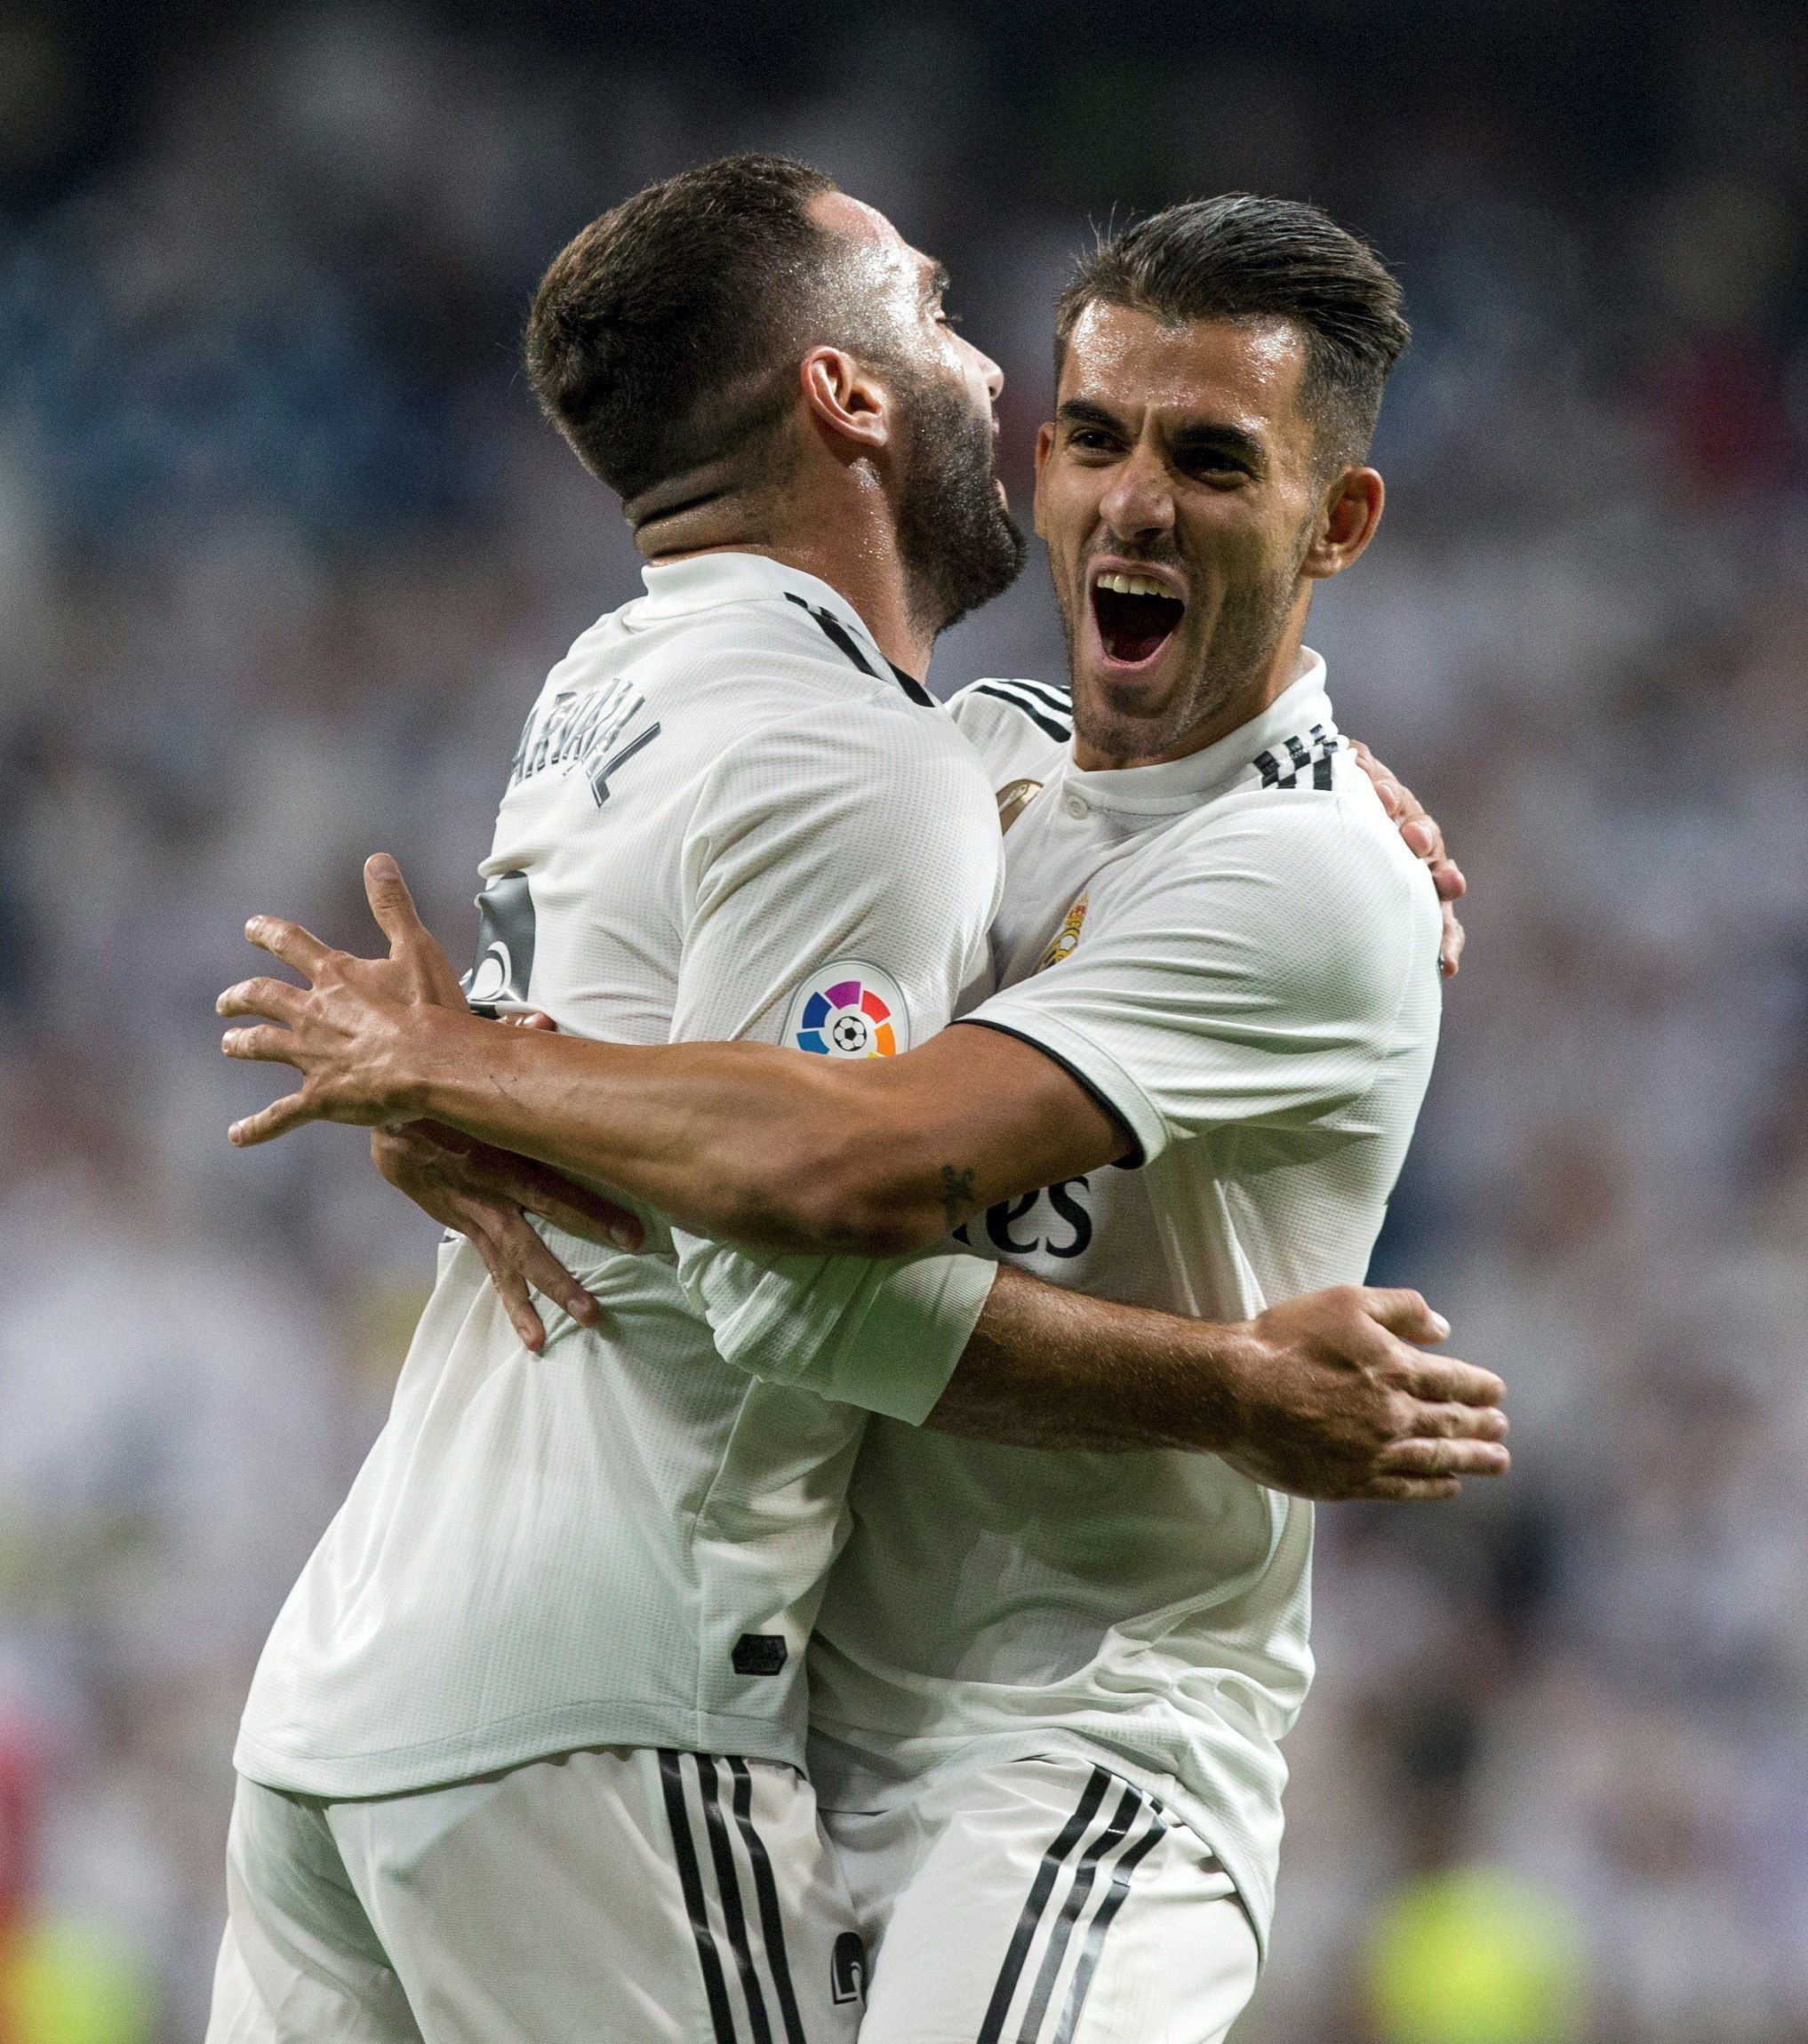 El Real Madrid controla con suficiencia en su debut liguero - Deporte